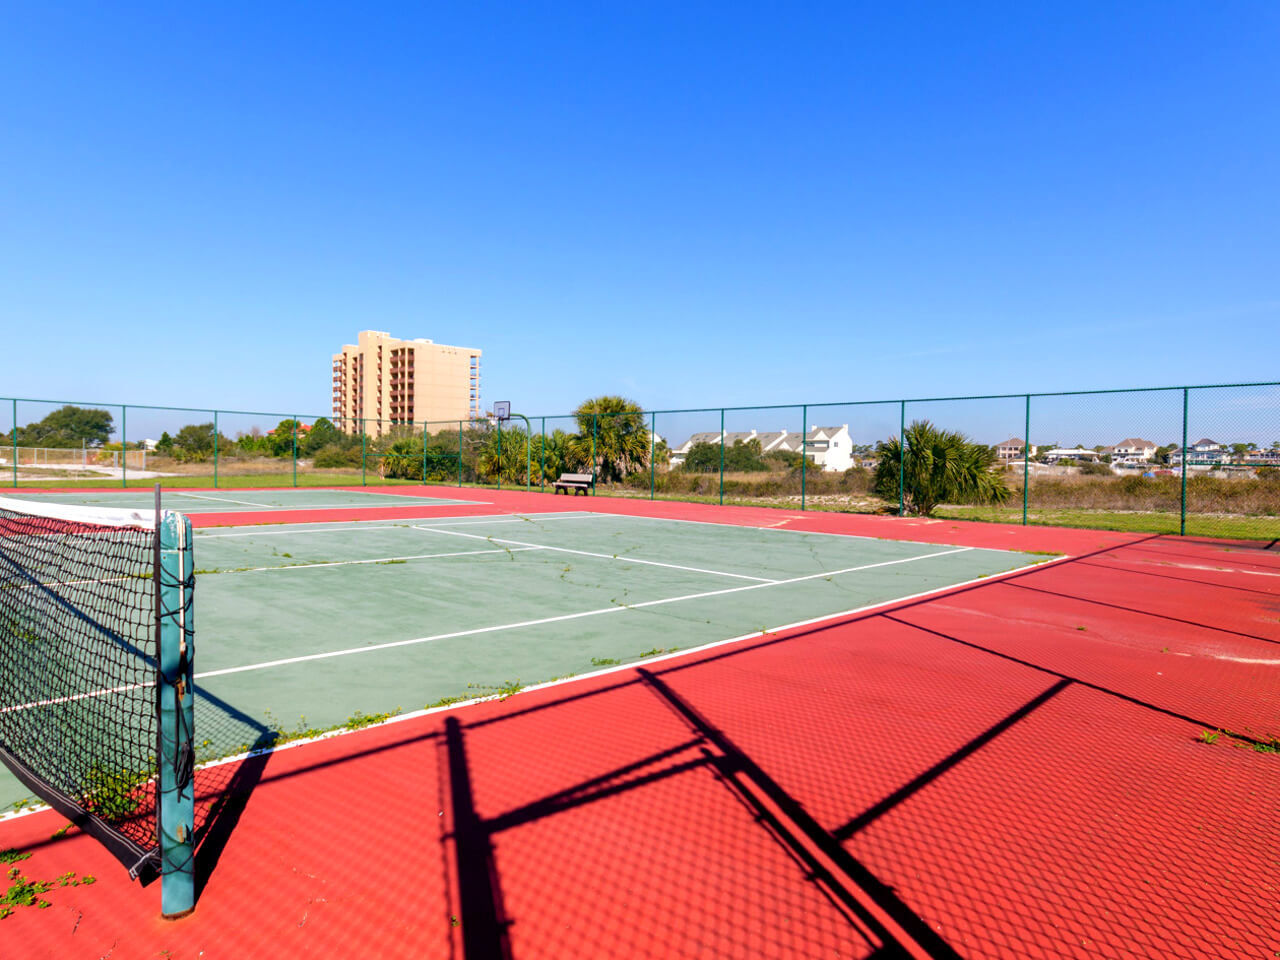 Play a game of tennis at Windward condos in Perdido Key